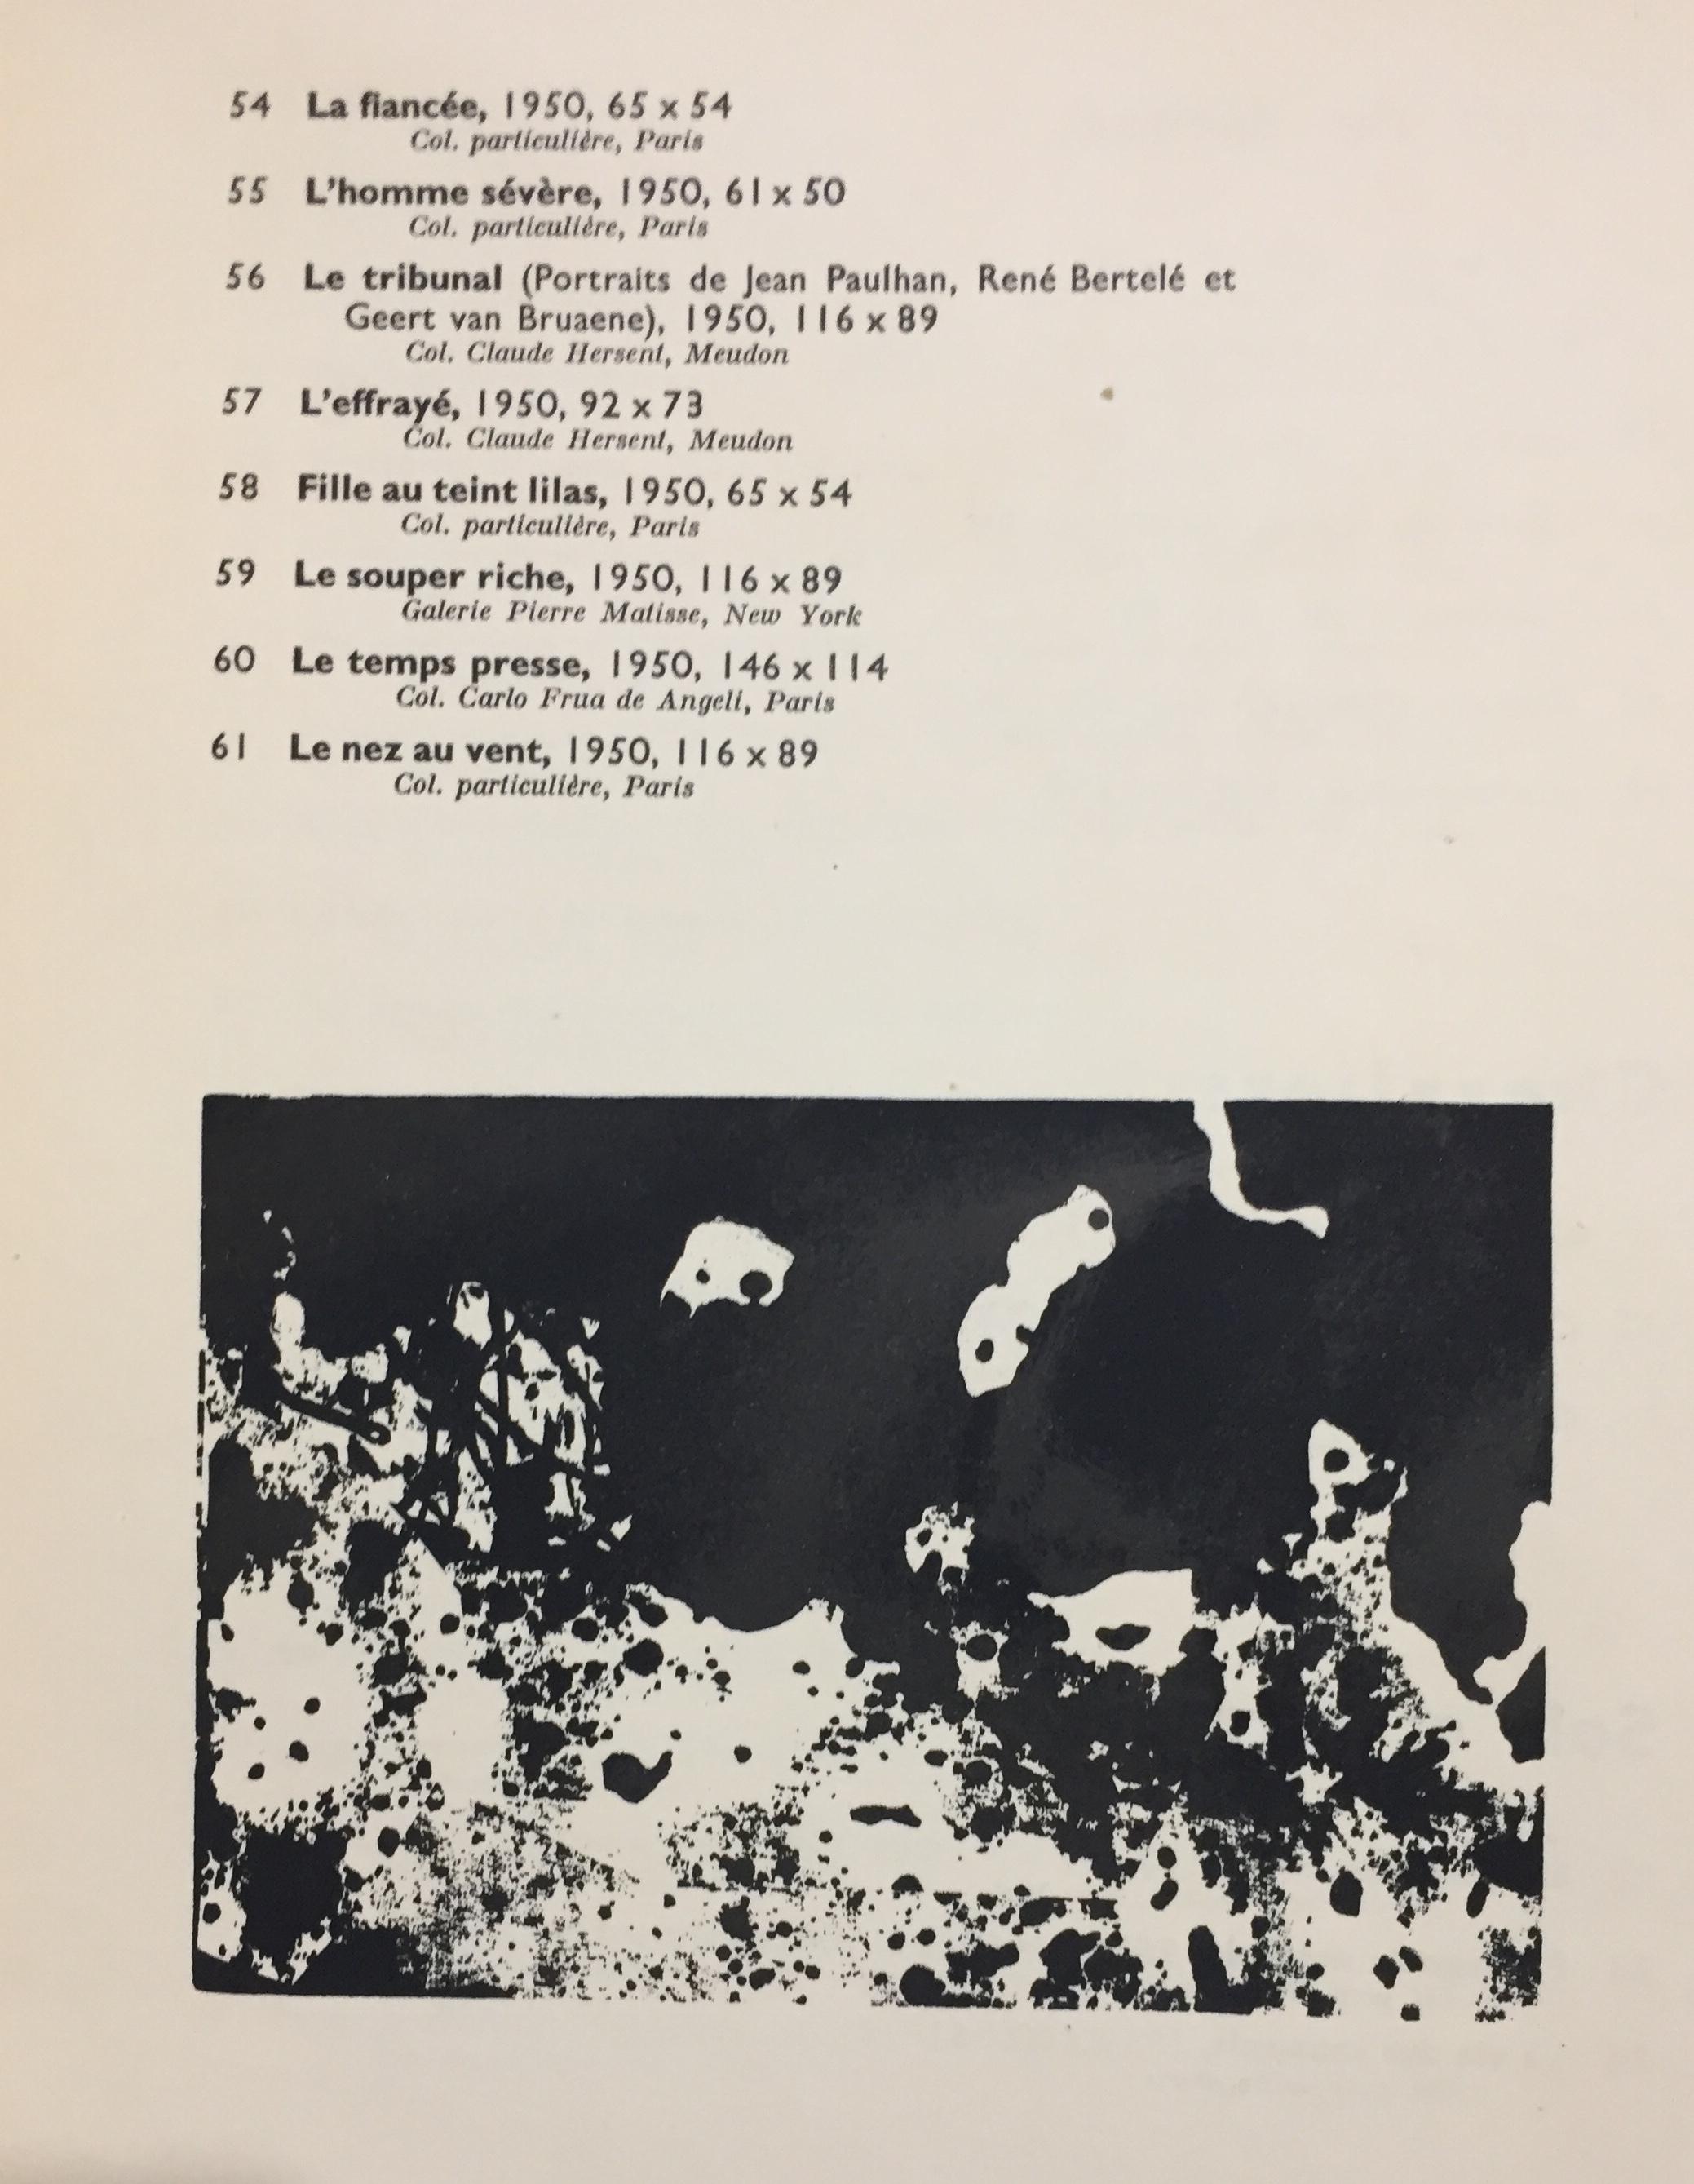 Exposition de Peintures, Dessins et Divers Travaux Exécutés de 1942 à 1954 - Abstract Art by Jean Dubuffet